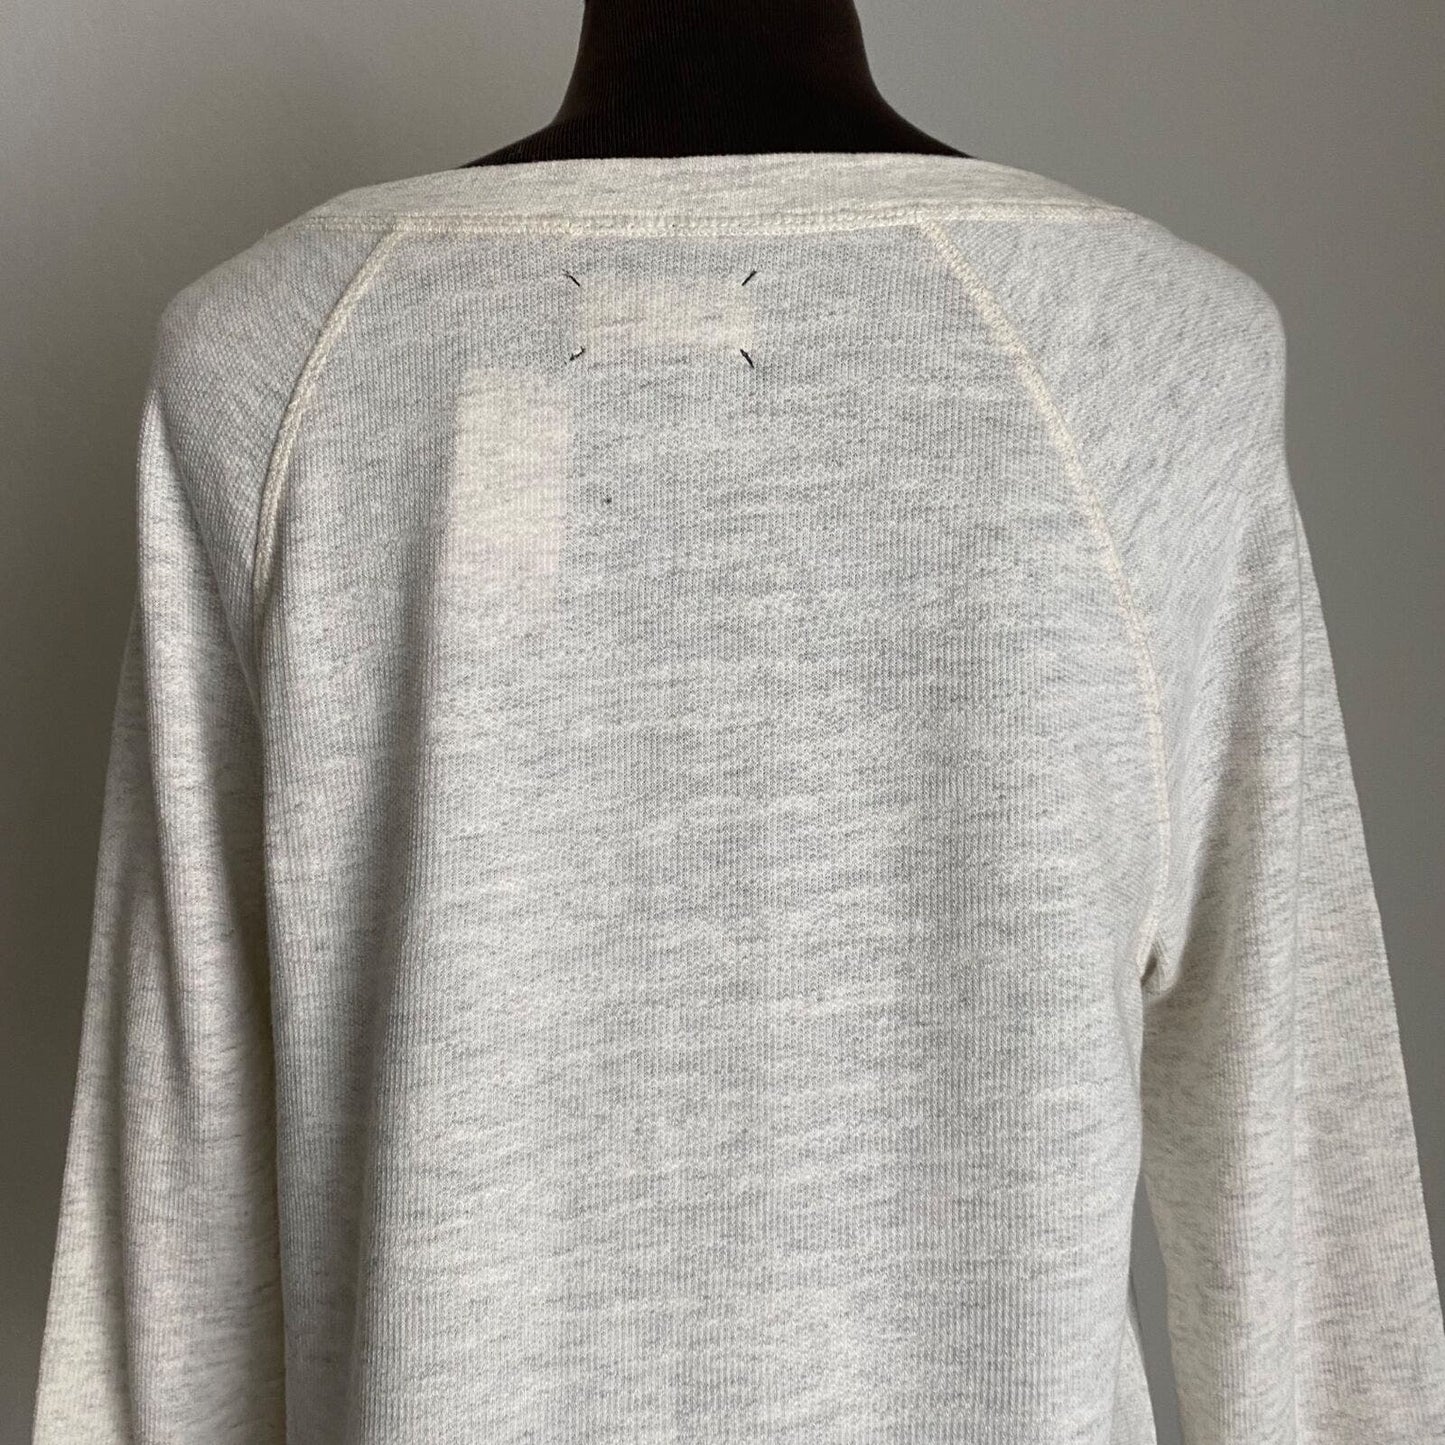 Lou & Grey sz S 100% Cotton boho knit top NWT